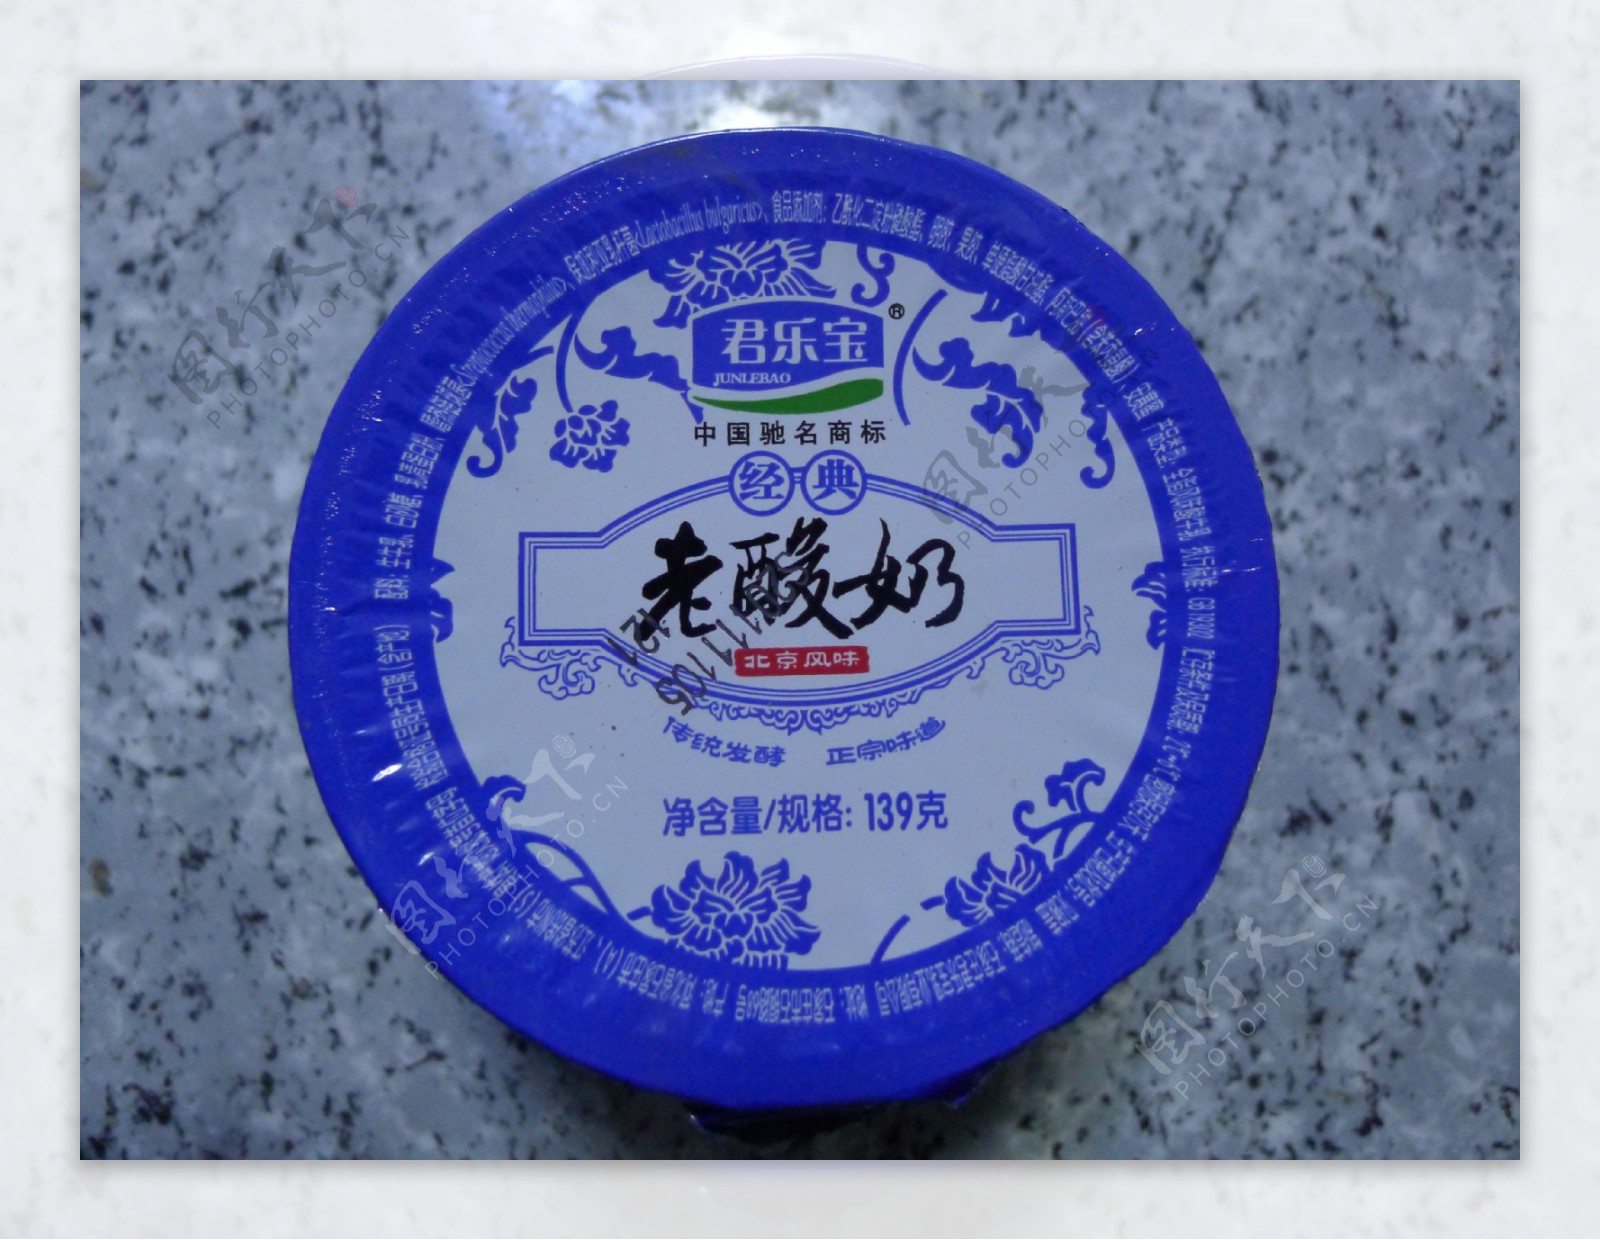 老北京酸奶包装图片